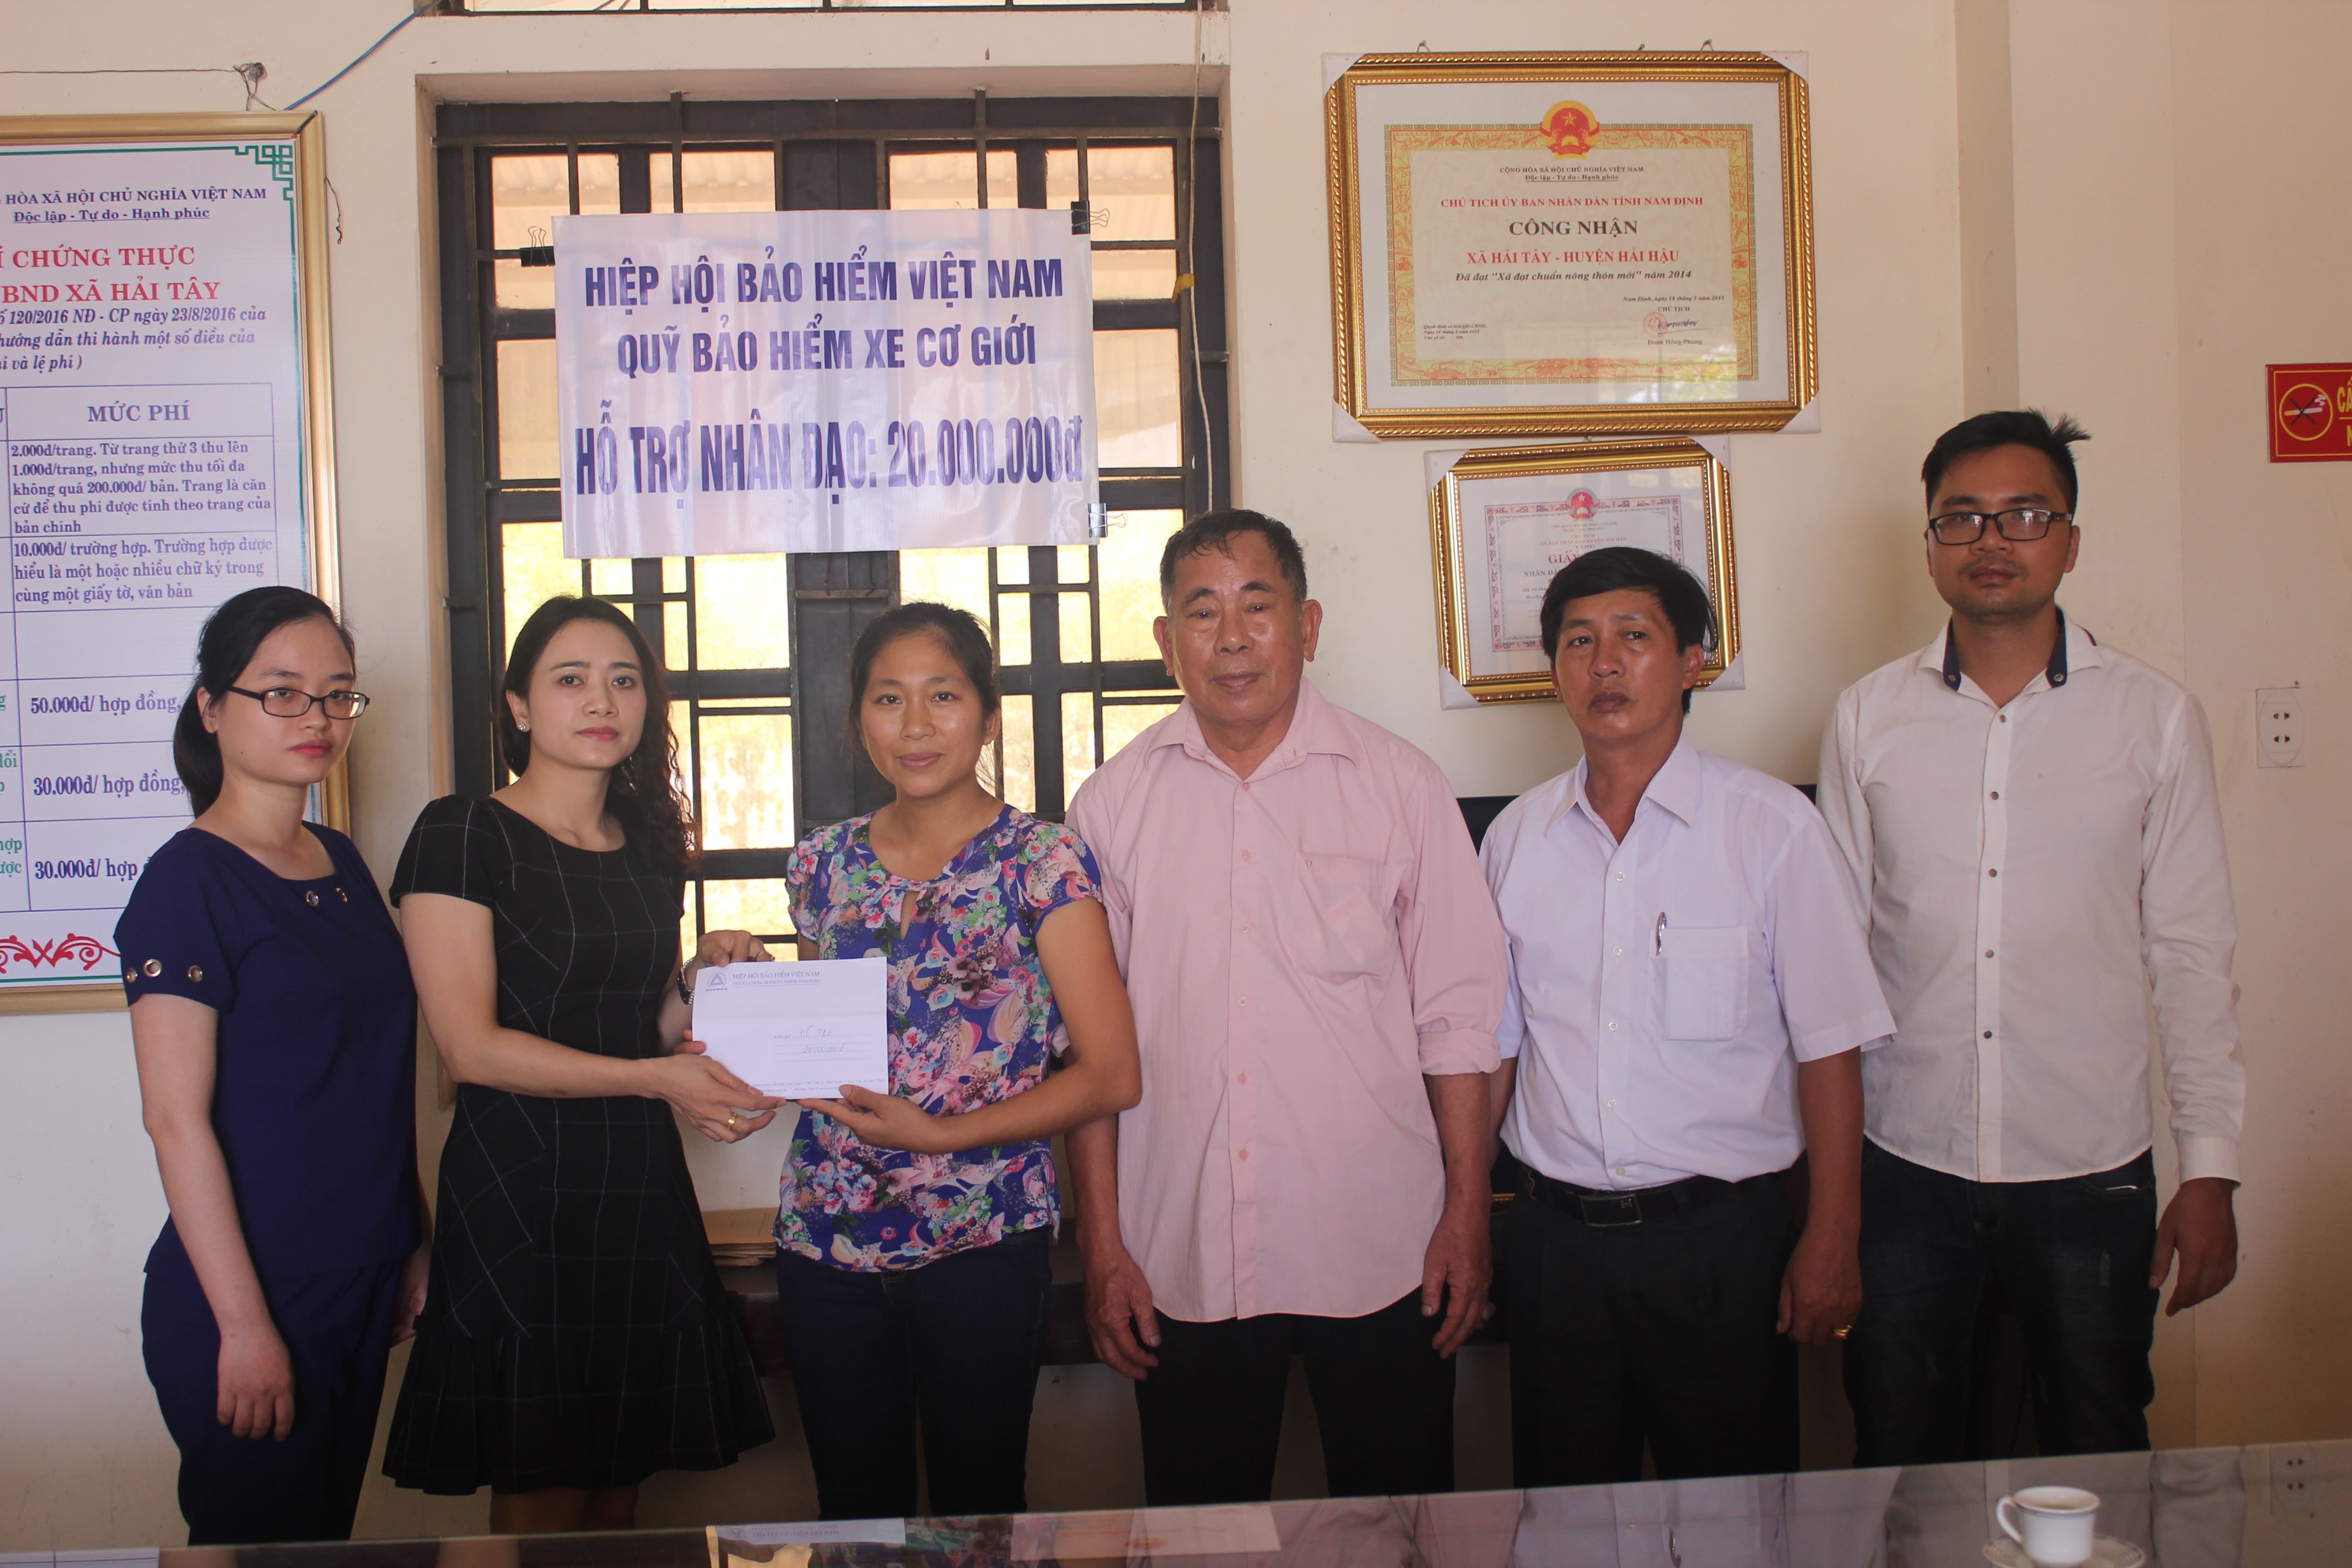 Quỹ Bảo hiểm xe cơ giới hỗ trợ nhân đạo cho gia đình nạn nhân tử vong do tai nạn giao thông tại Hải Hậu – Nam Định